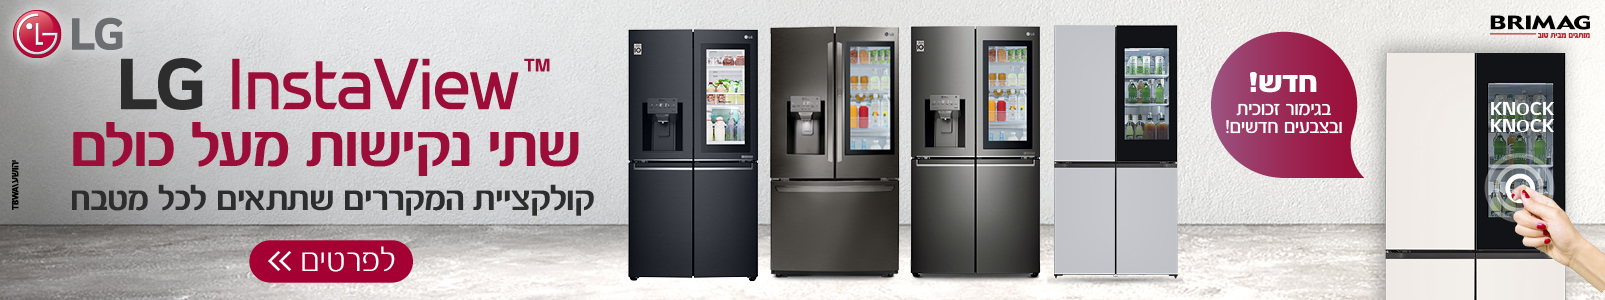 LG INSTAVIEW - שתי נקישות מעל כולם. קולקציית המקררים שתתאים לכל מטבח. חדש! בגימור זכוכית ובצבעים חדשים